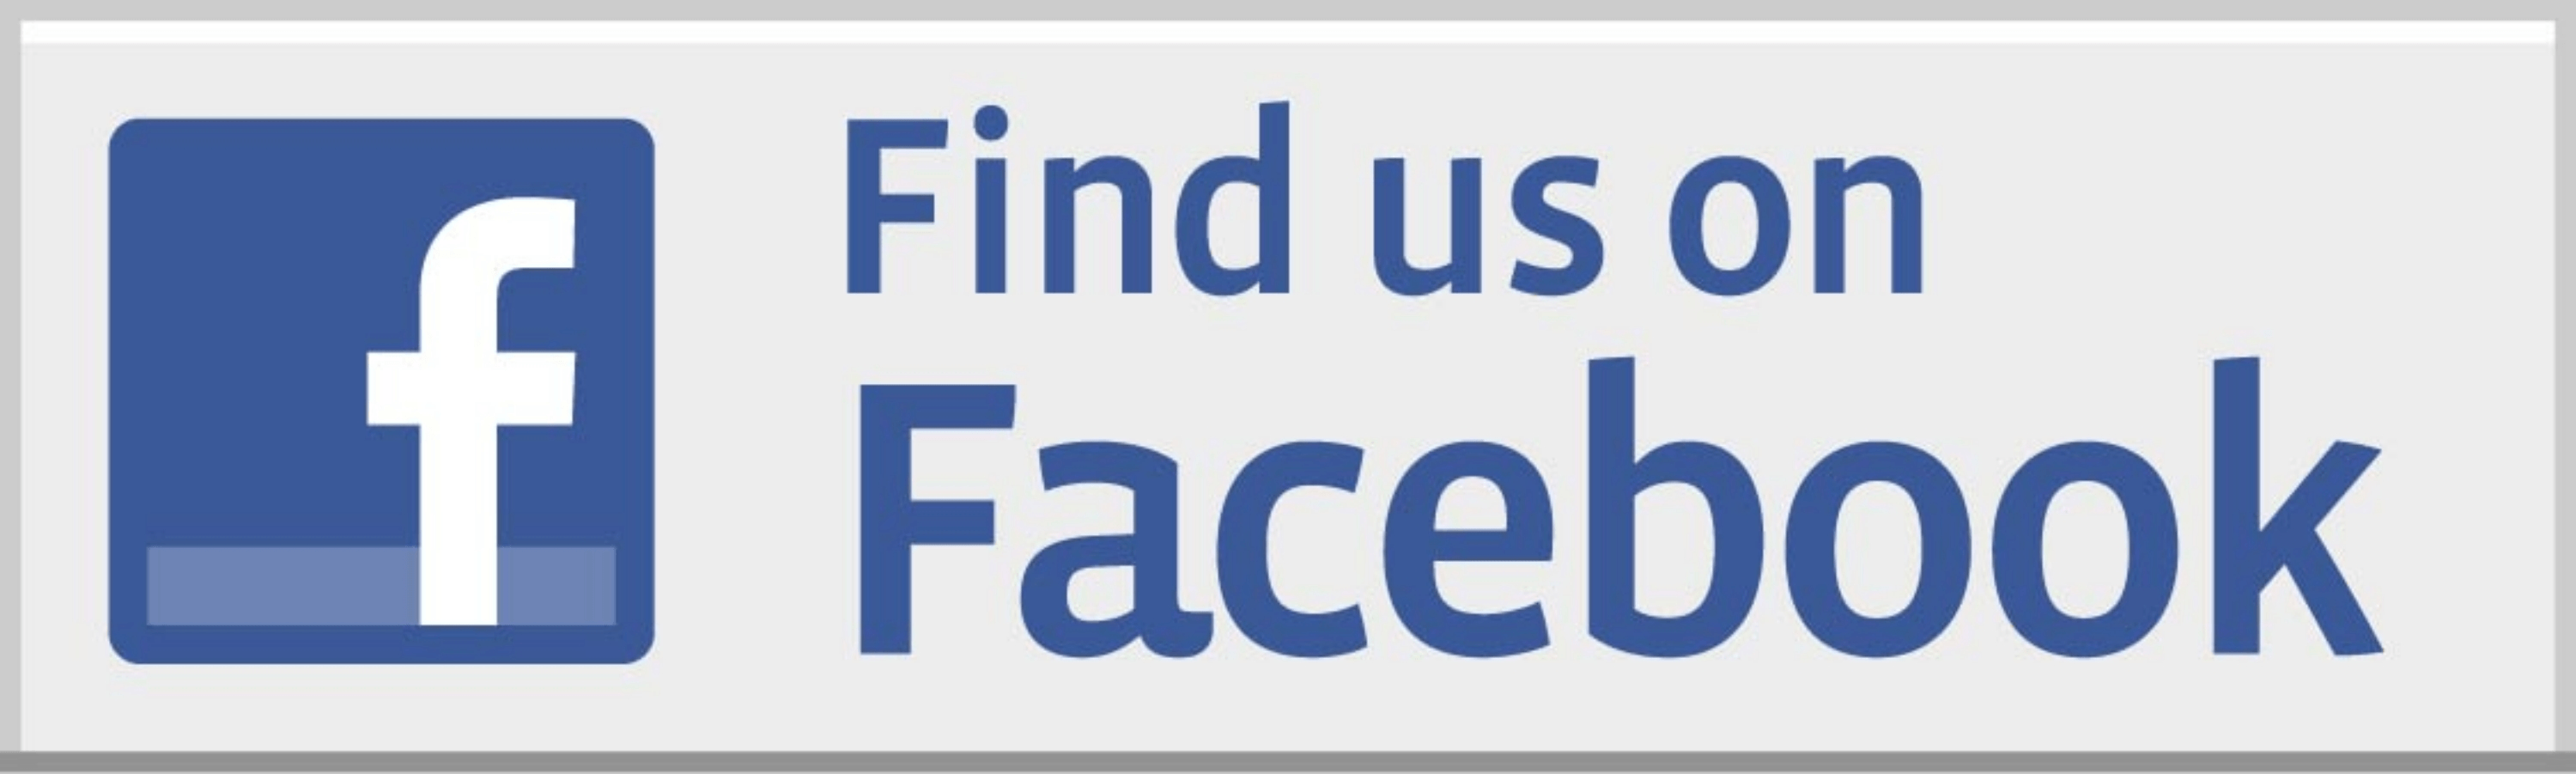 Visit Us On Facebook Logo - Facebook Logo